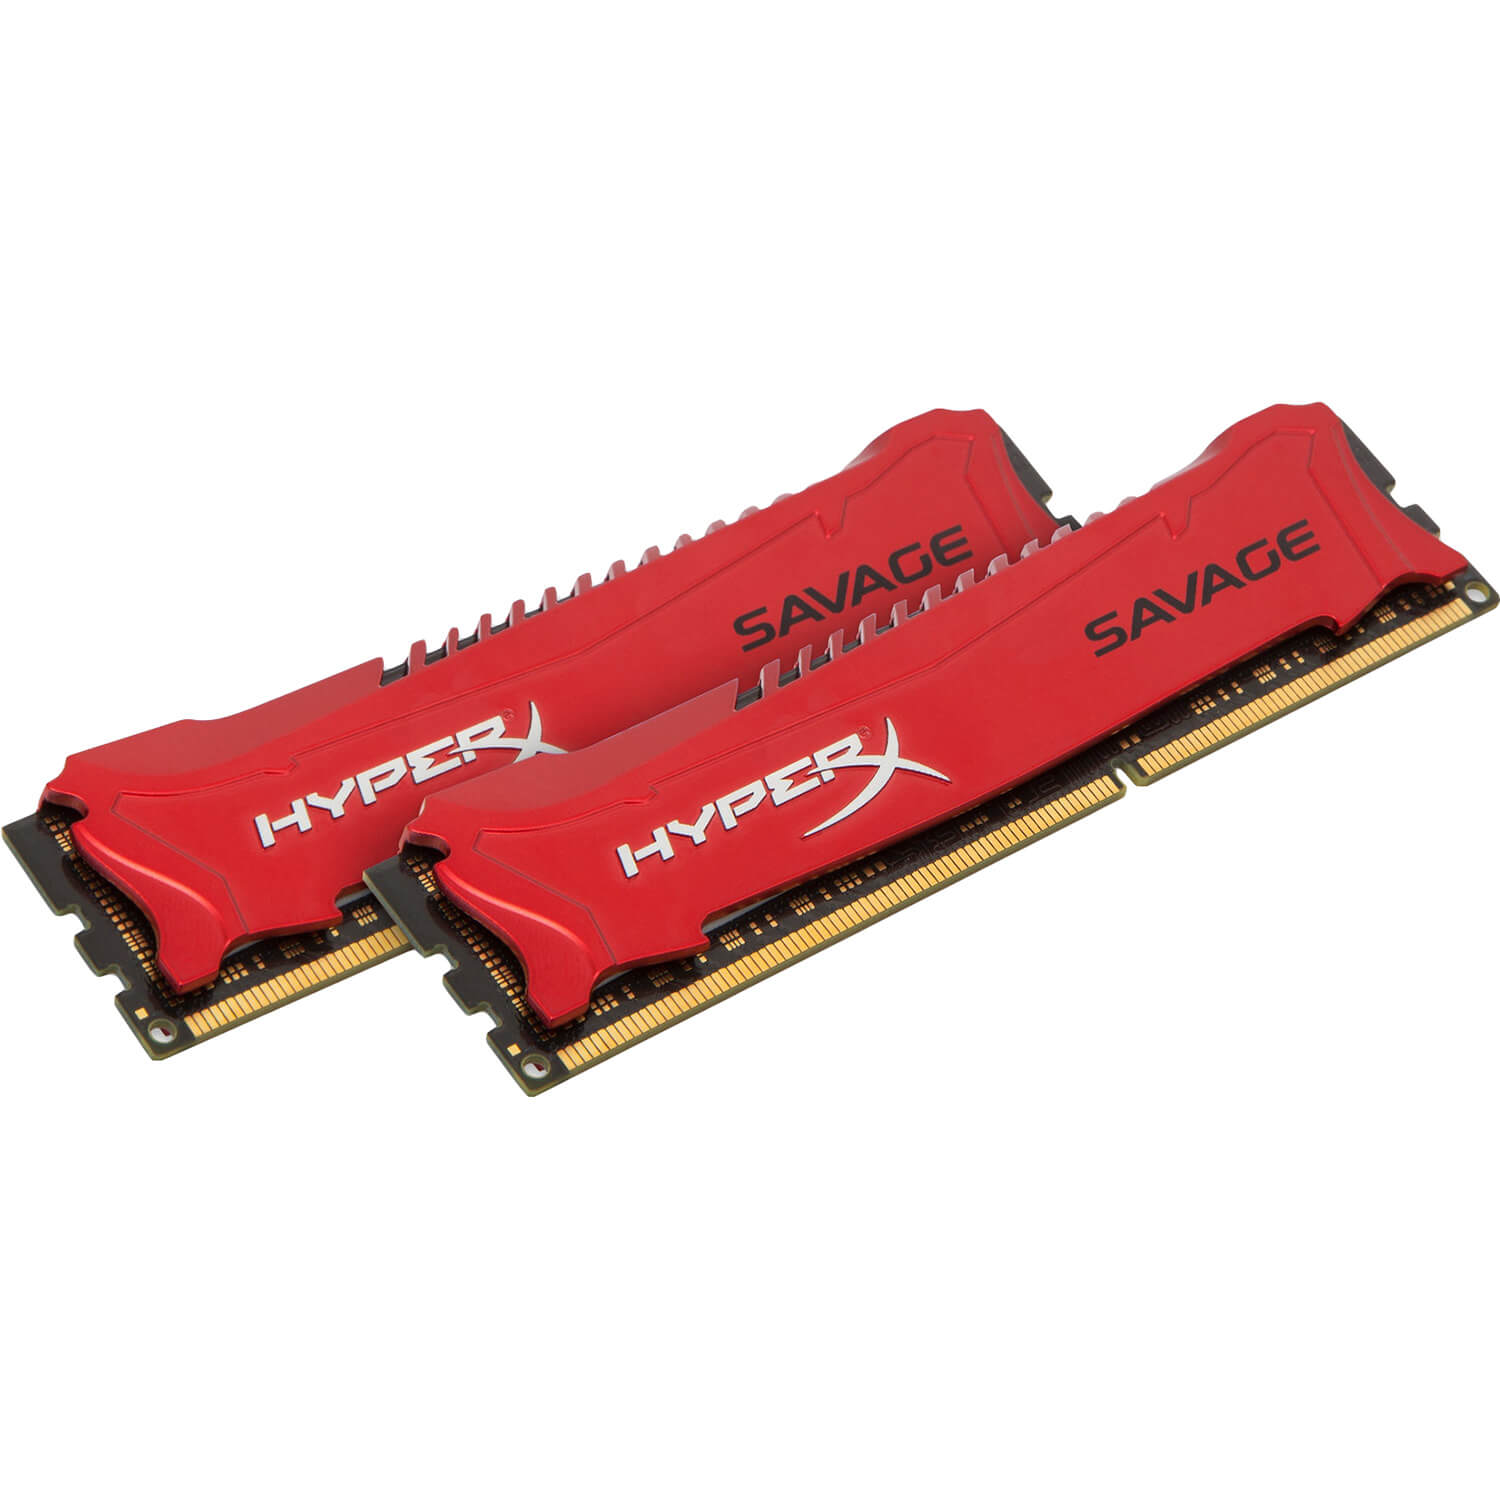  Memorie Kingston HyperX Savage HX316C9SRK2/8, 8GB, DDR3, 1600MHz, CL9 